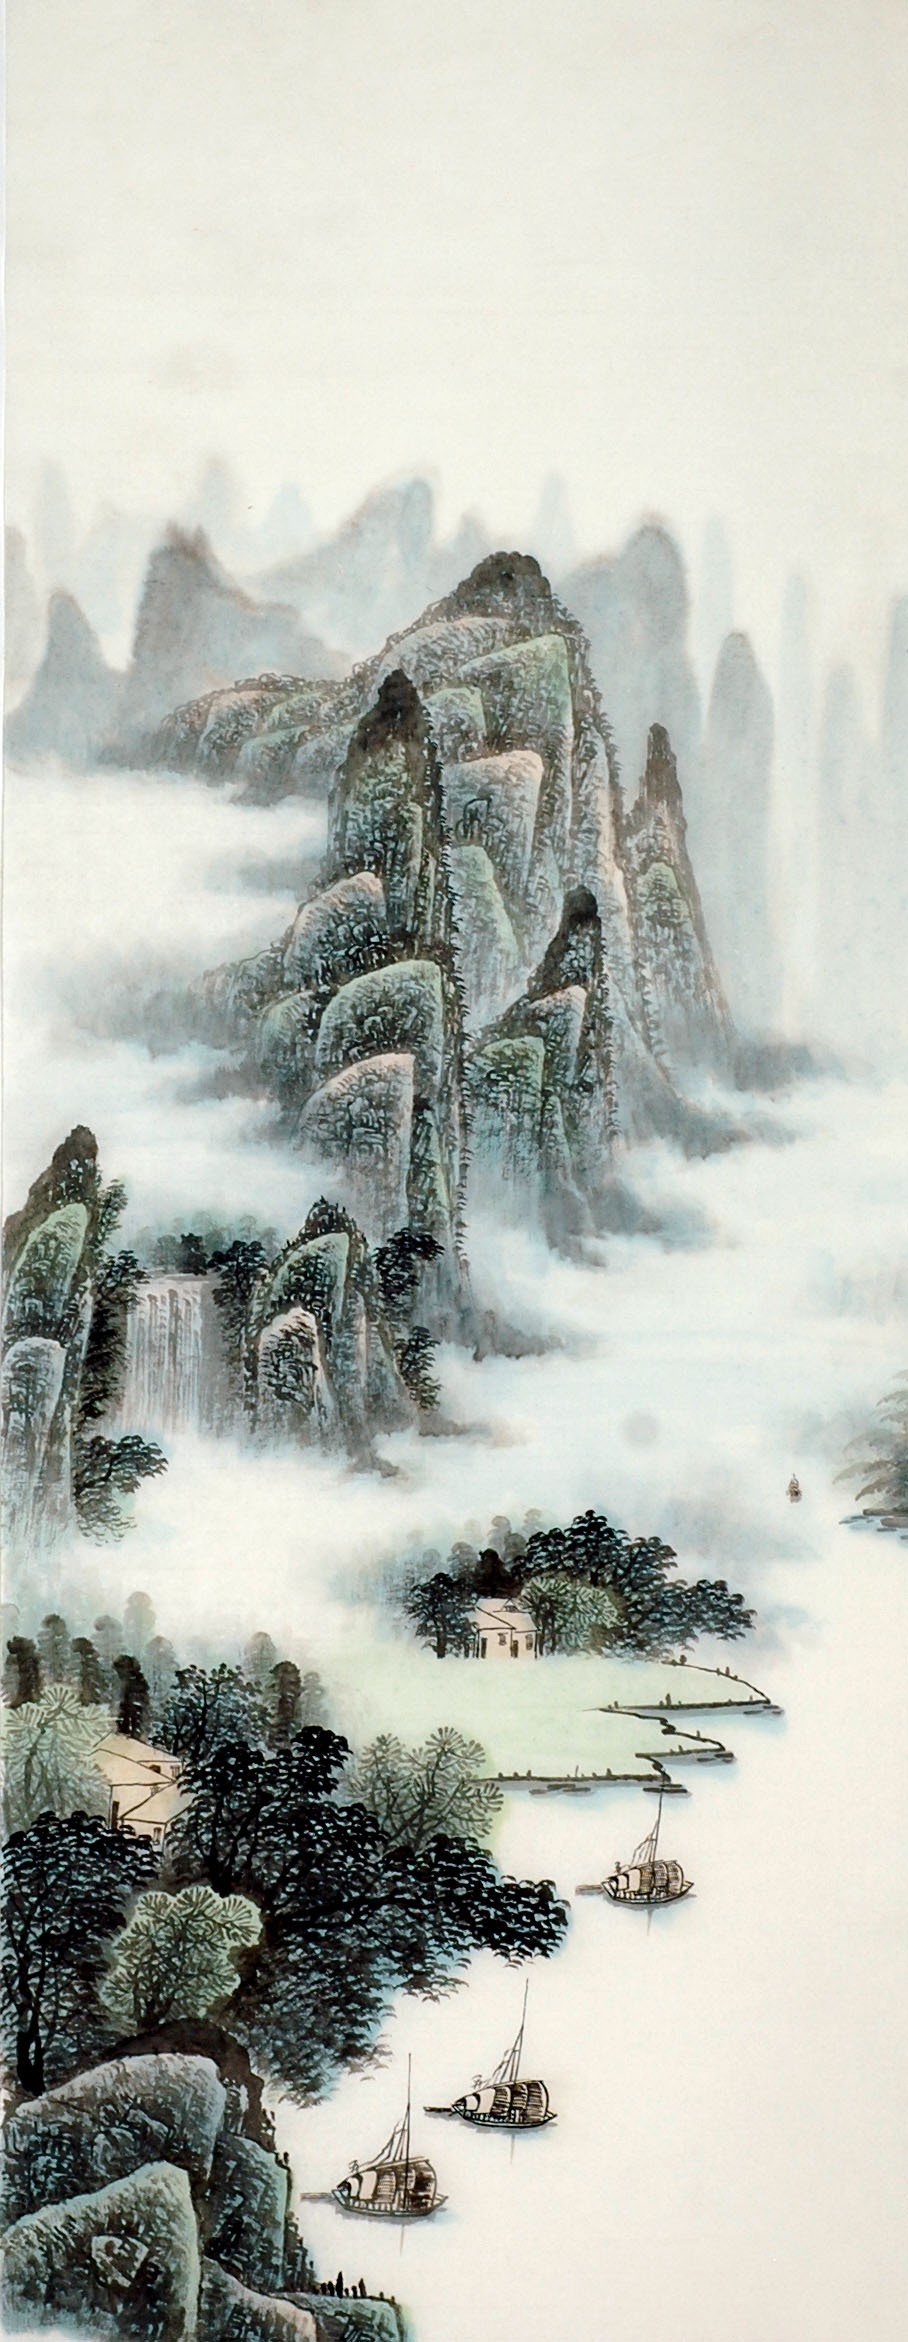 Chinese Landscape Painting - CNAG009549